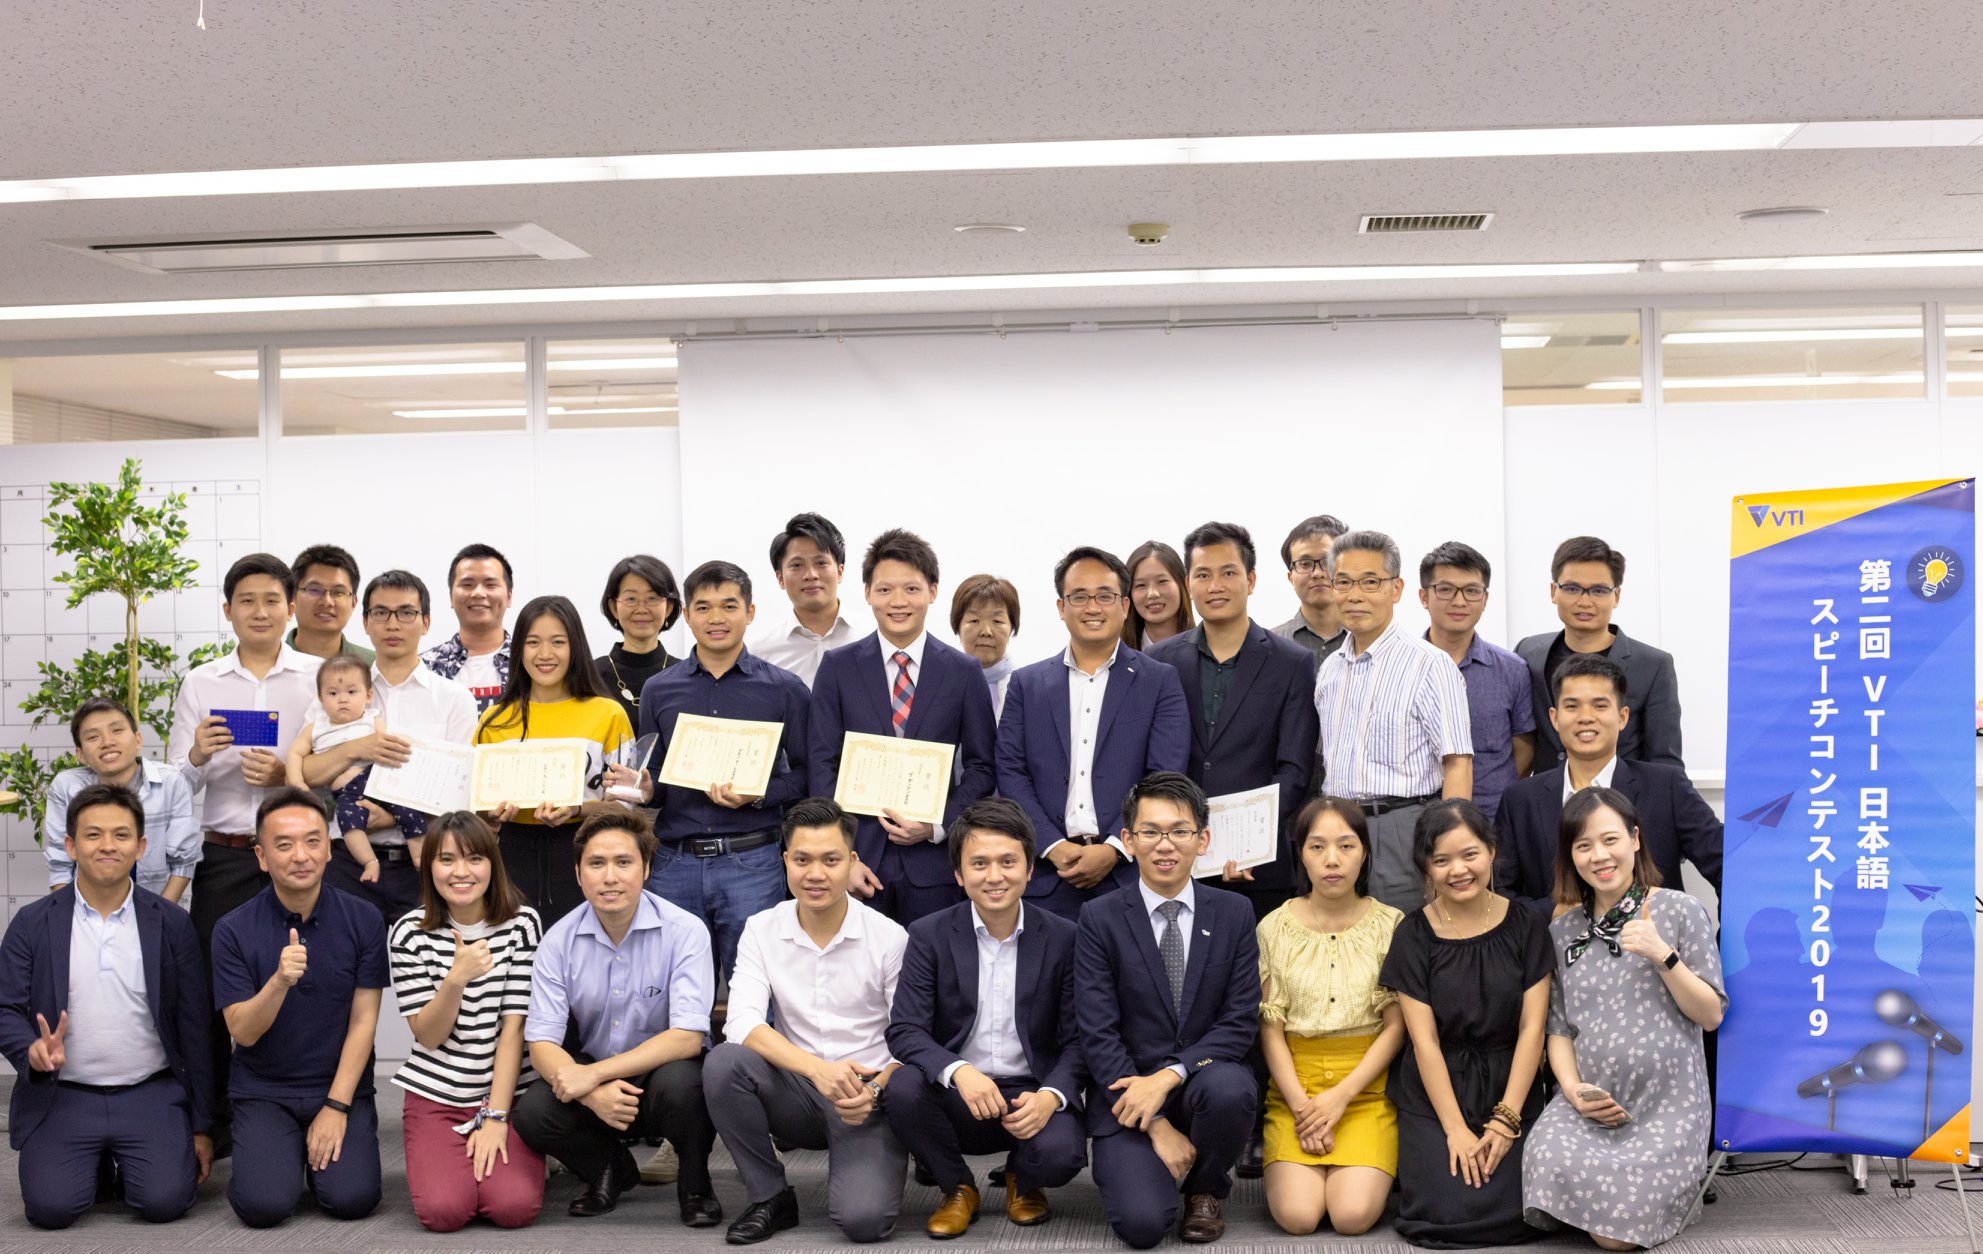 Tổng kết cuộc thi Hùng biện tiếng Nhật:「VTI Nihongo Speech Contest 2019 với Trung Quốc